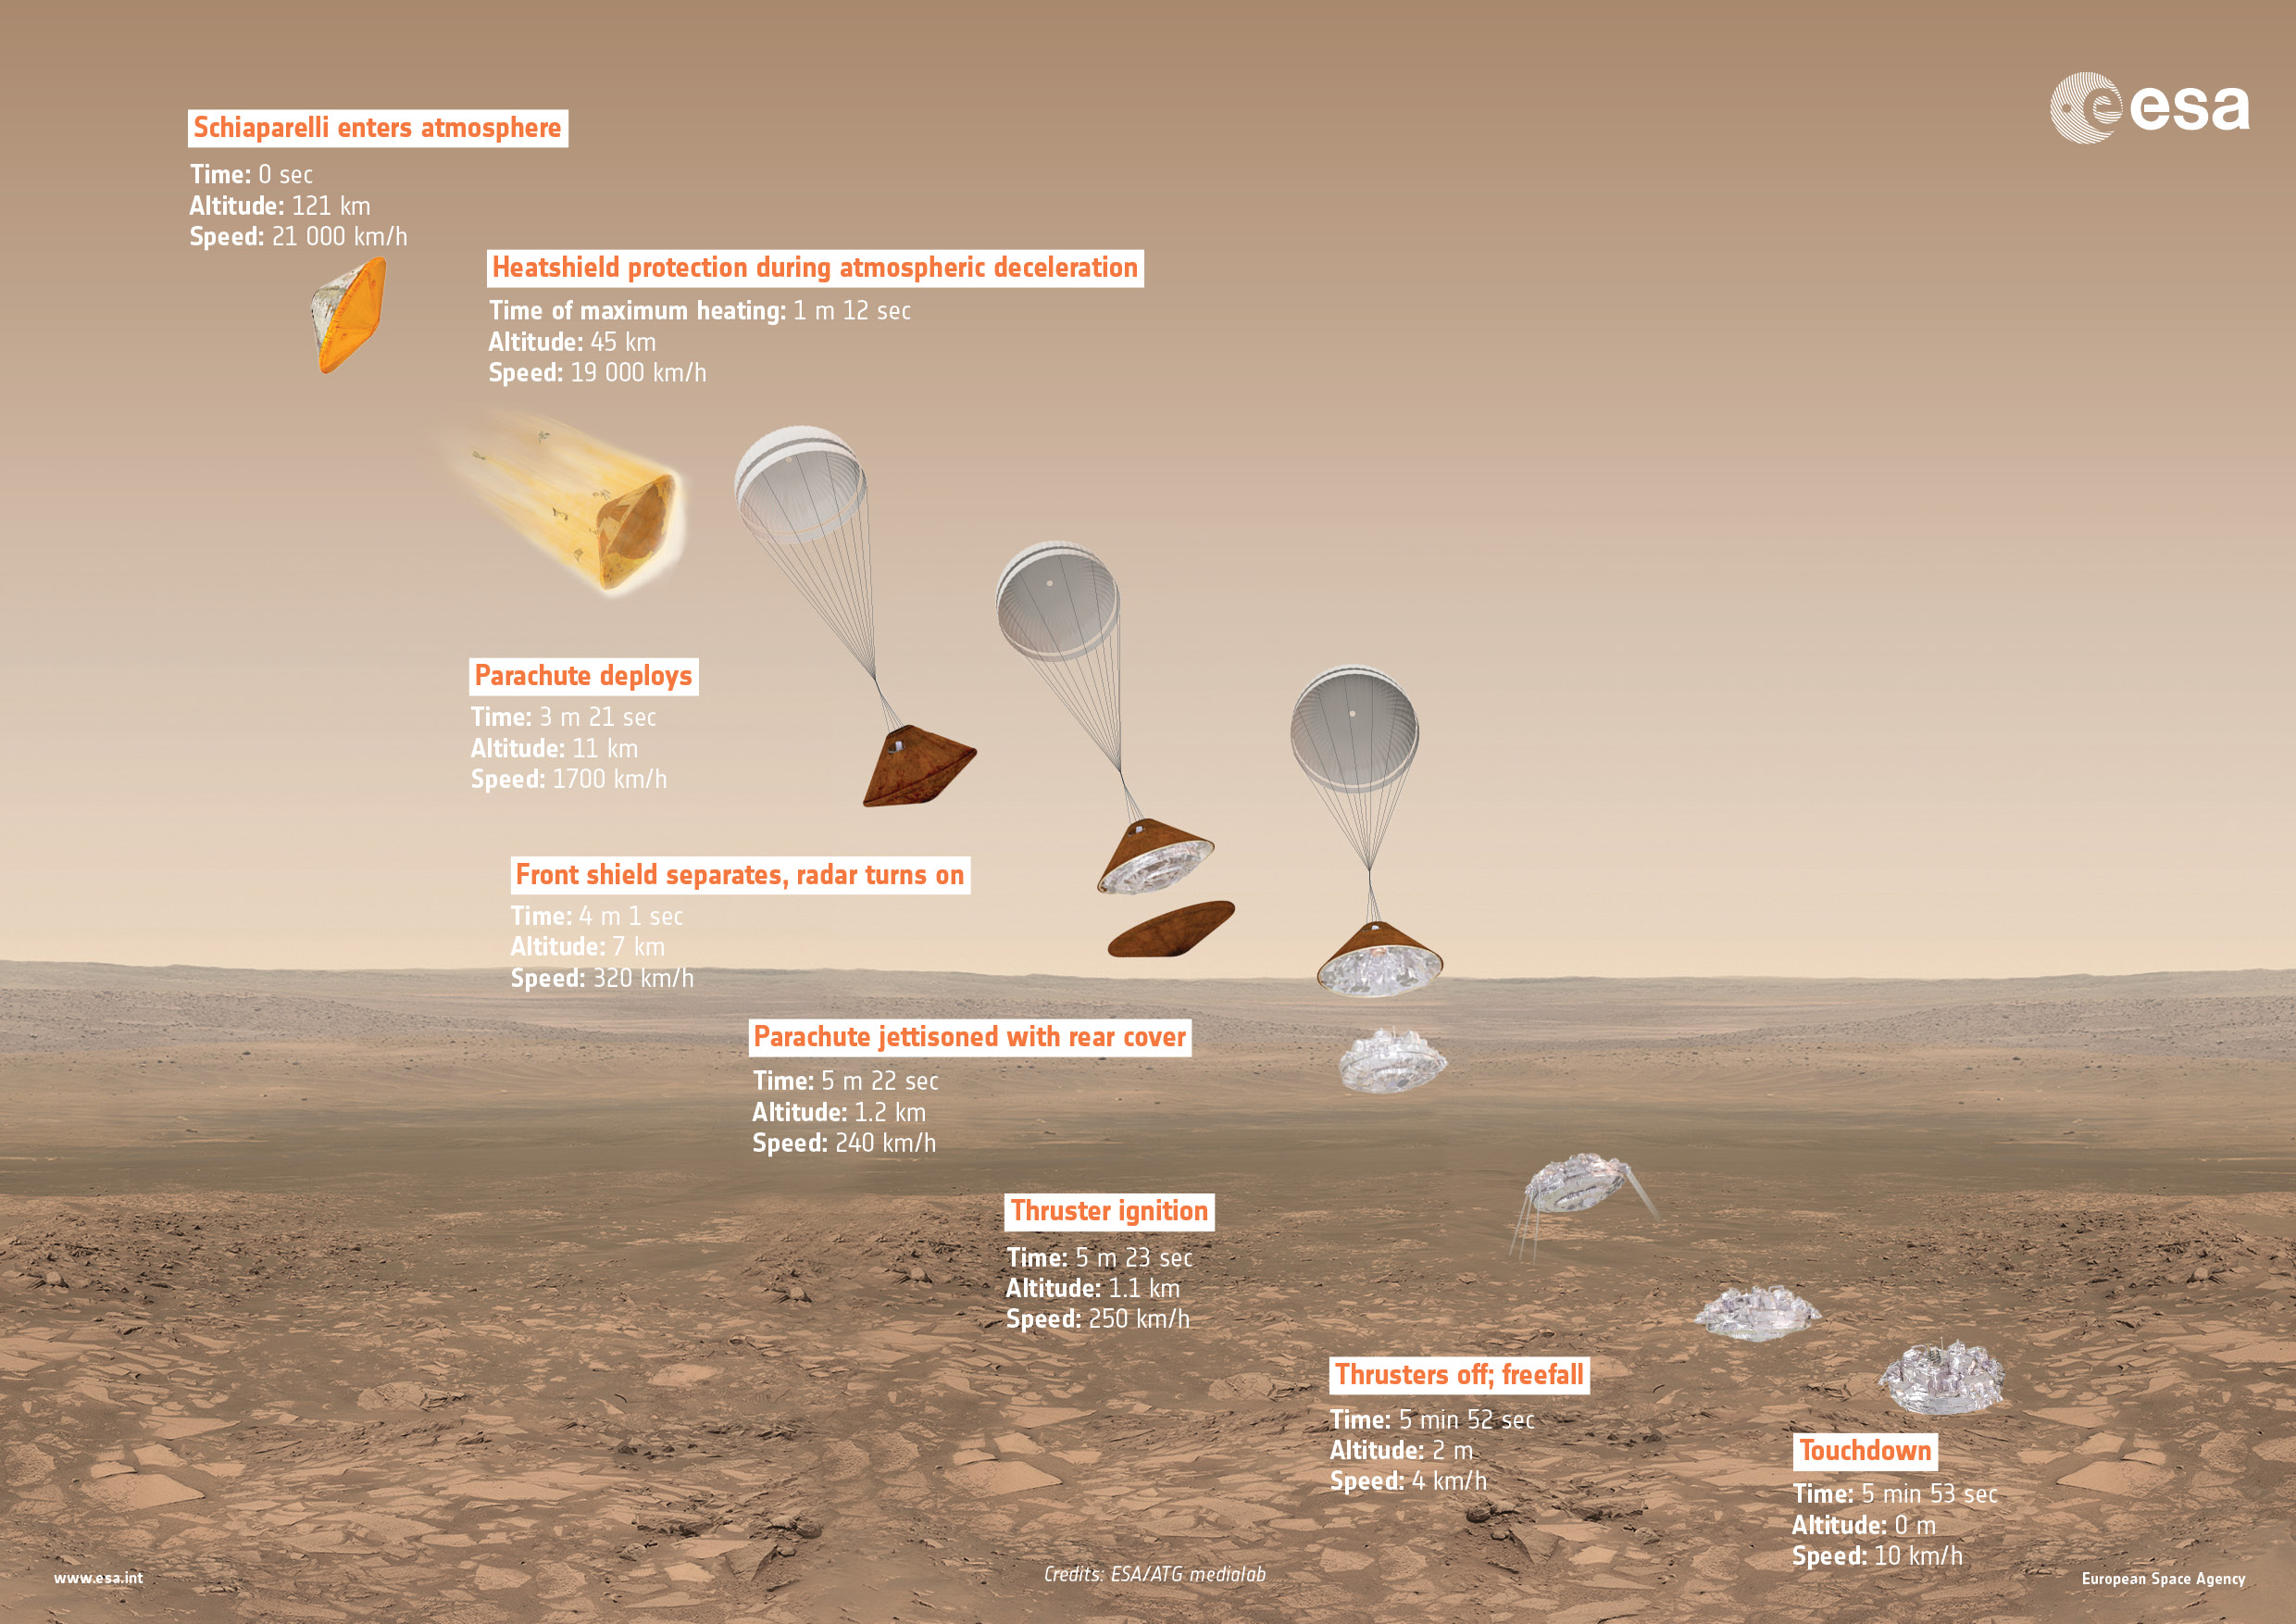 Не се знае дали ”Скиапарели” е кацнал на Марс